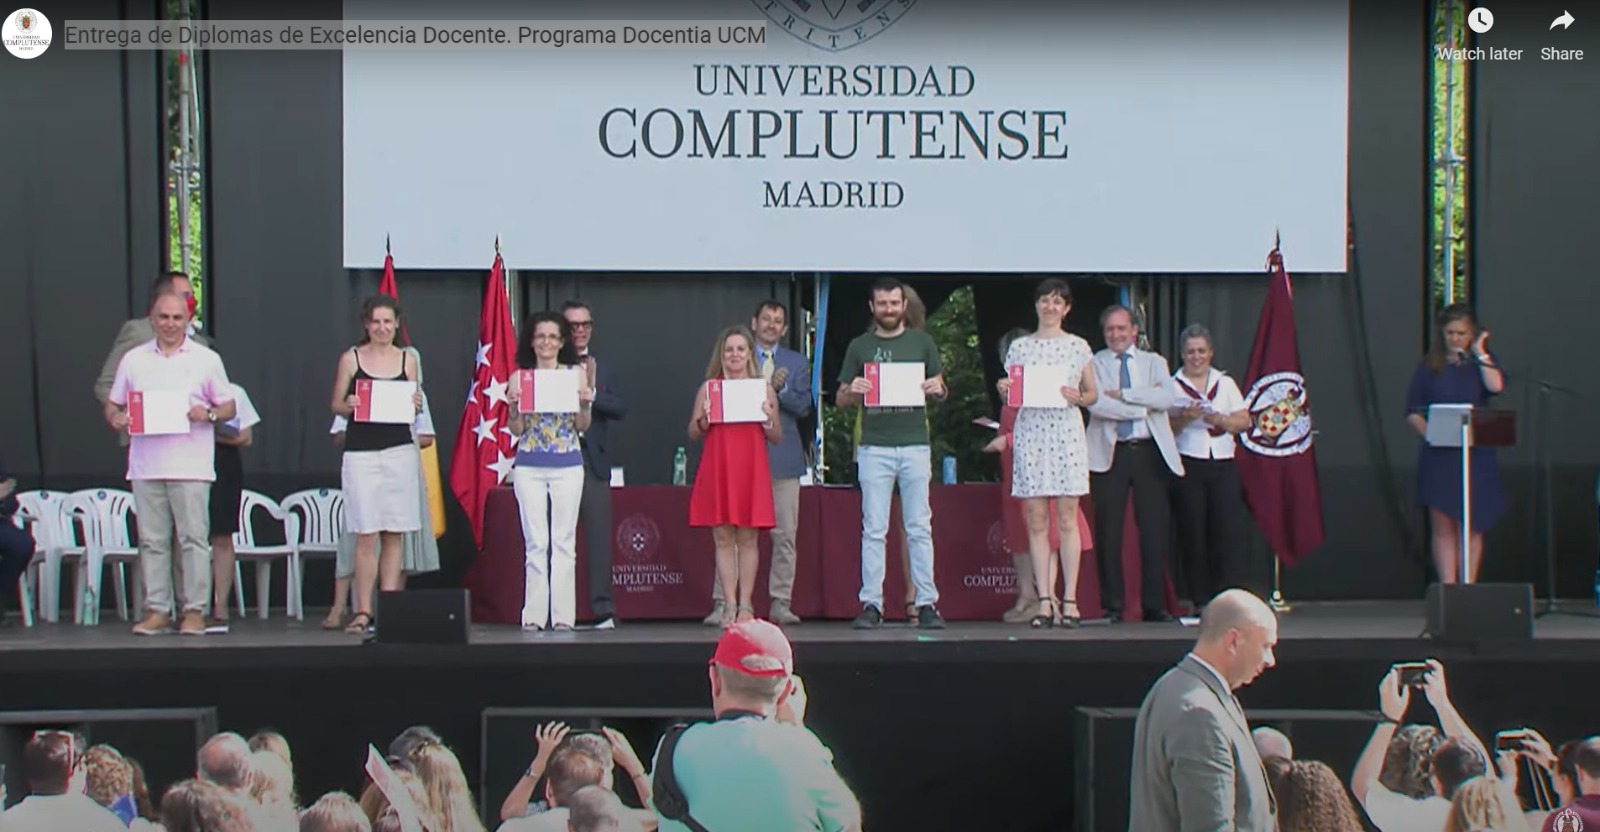 La profesora Monte Lara recibe el diploma de reconocimiento a la EXCELENCIA DOCENTIA UCM, correspondiente a los trienios 2015-2018 y 2018-2021 el 16 de junio de 2022